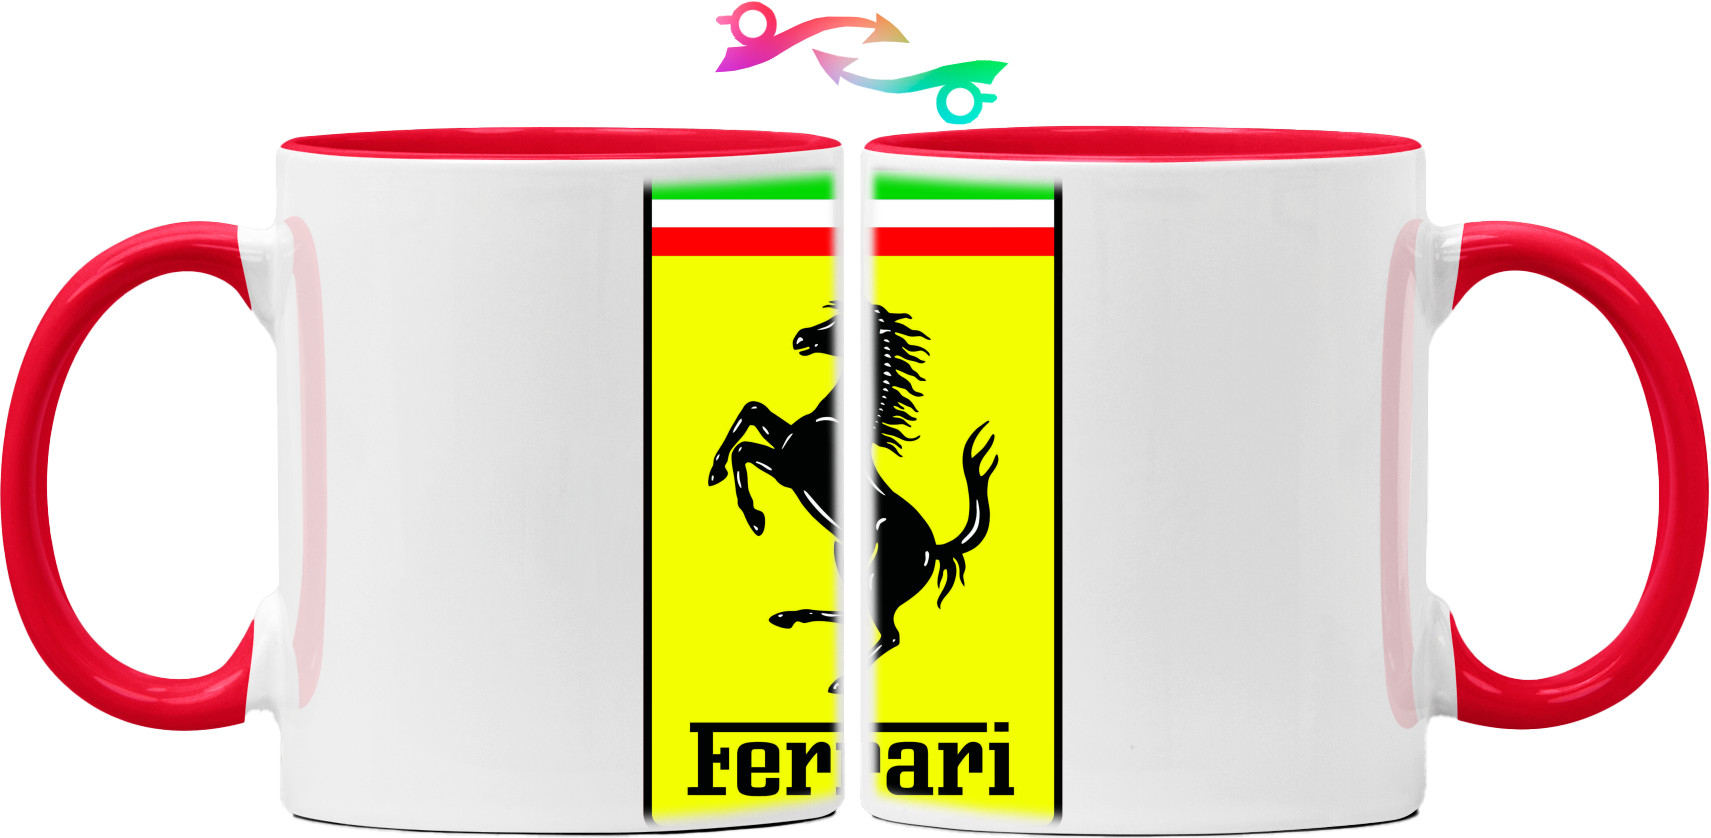 Ferrari logo 1